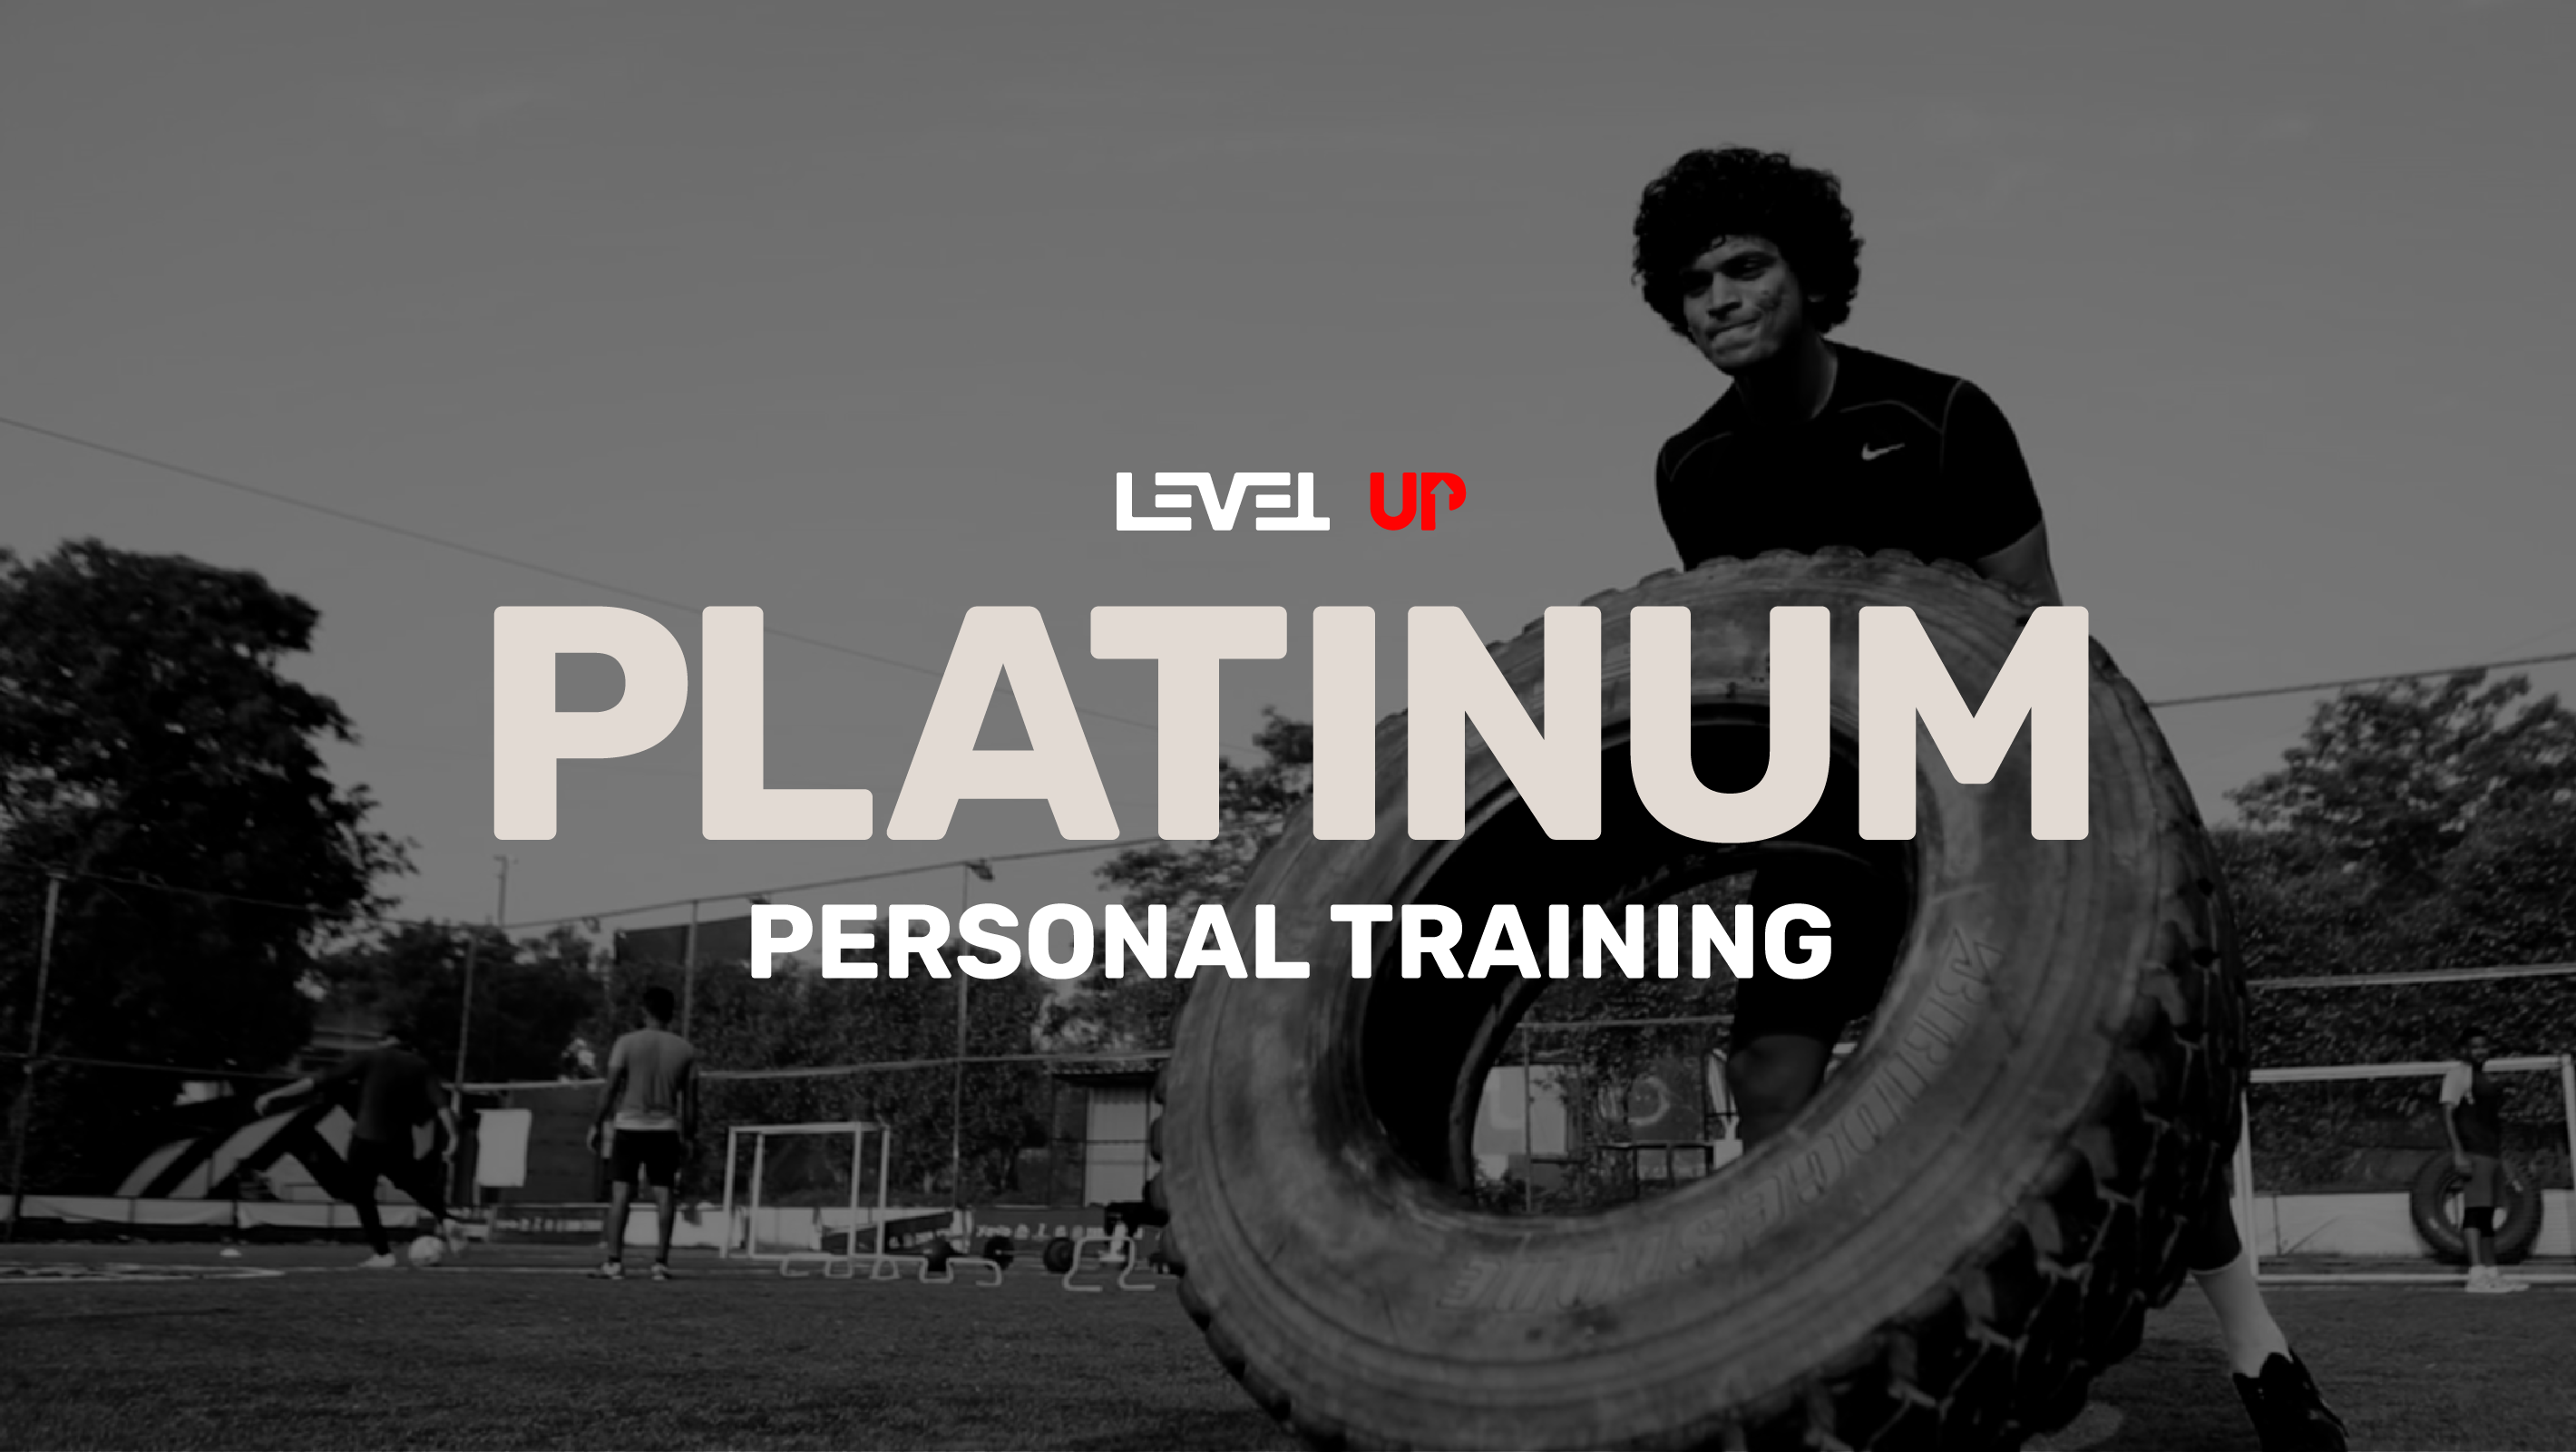 Level Up PLATINUM Personal Training